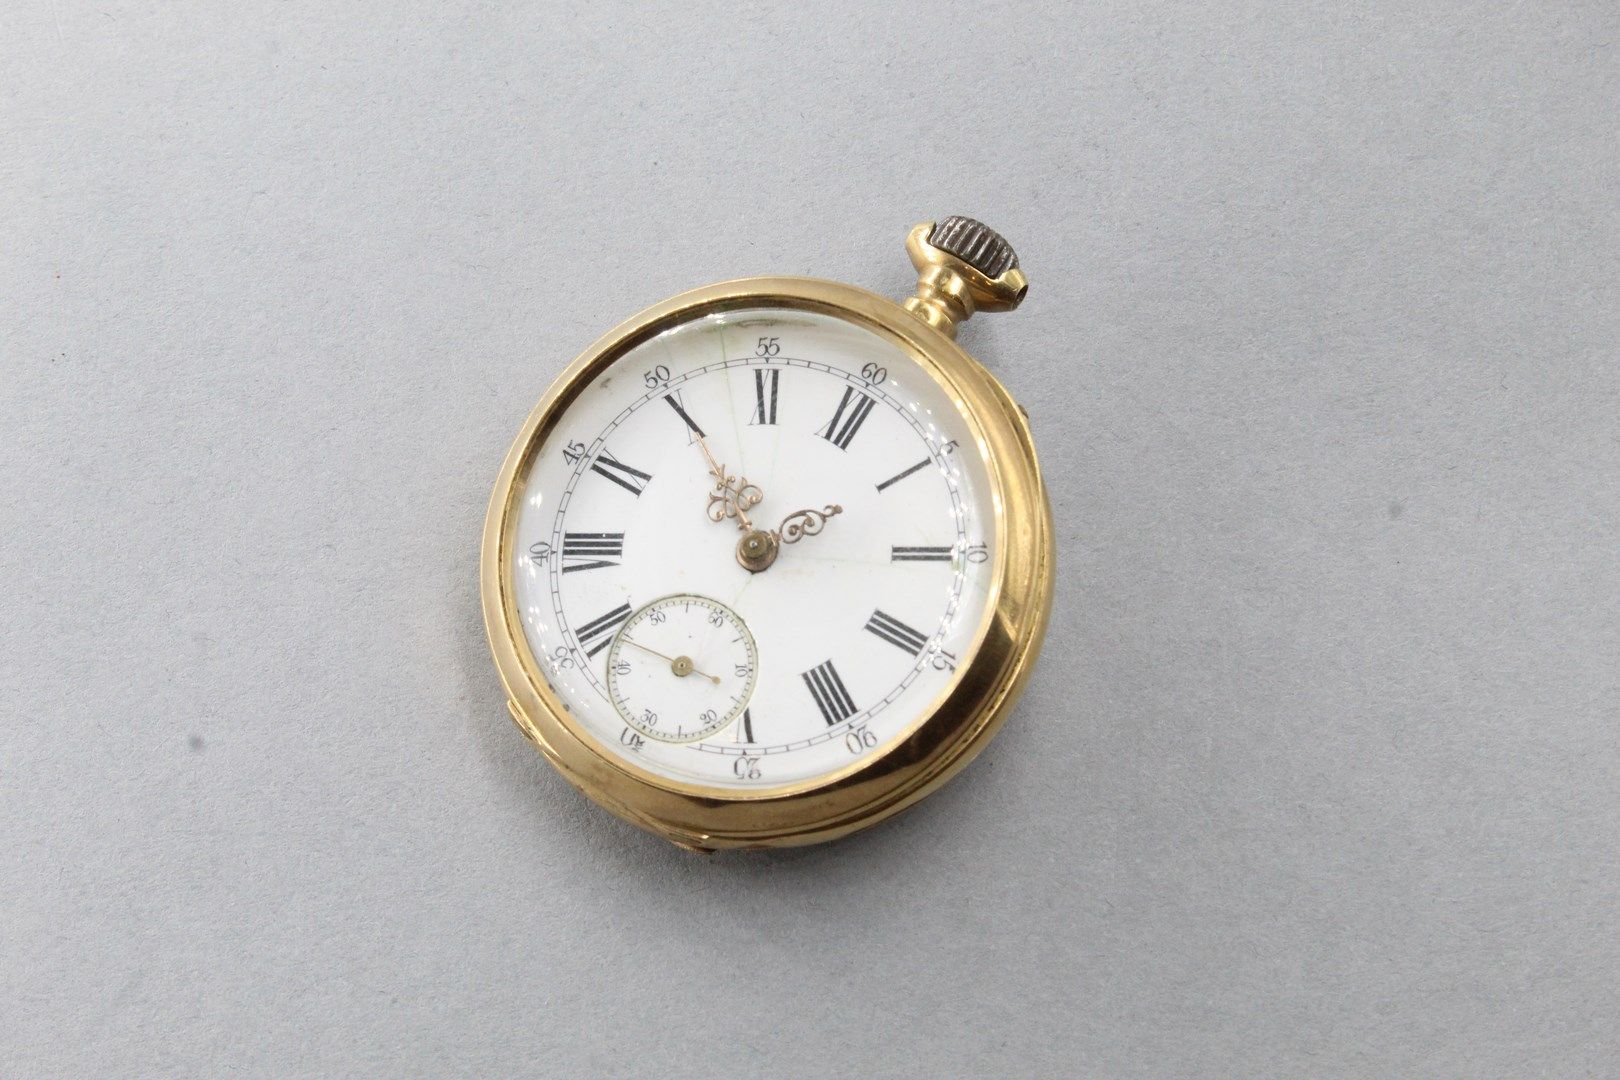 Null Restos de un reloj de bolsillo de oro amarillo de 18k (750). 

Peso bruto: &hellip;